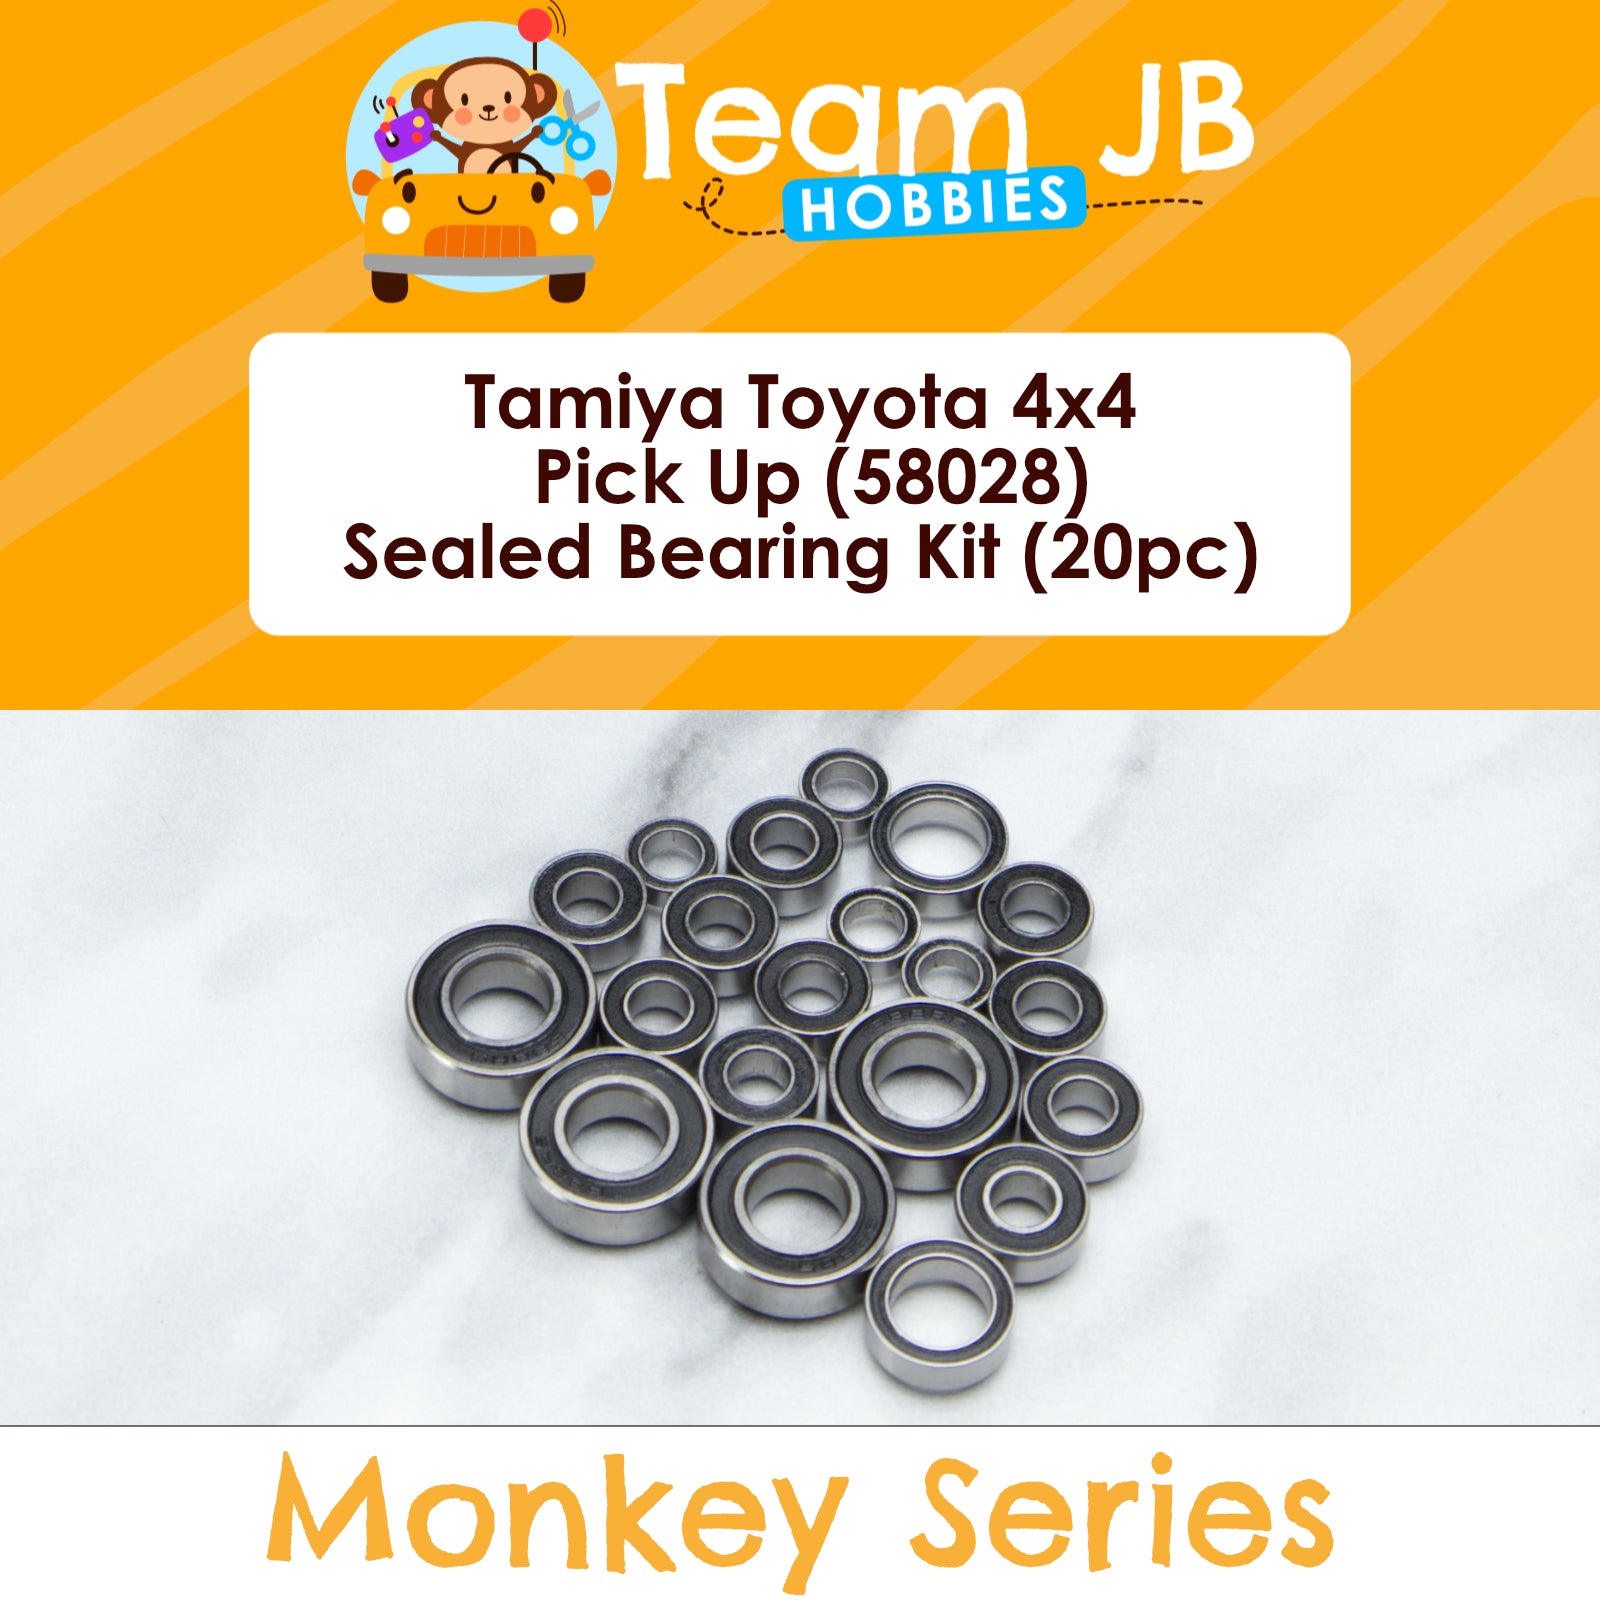 Tamiya Toyota 4x4 Pick Up (58028) - Sealed Bearing Kit